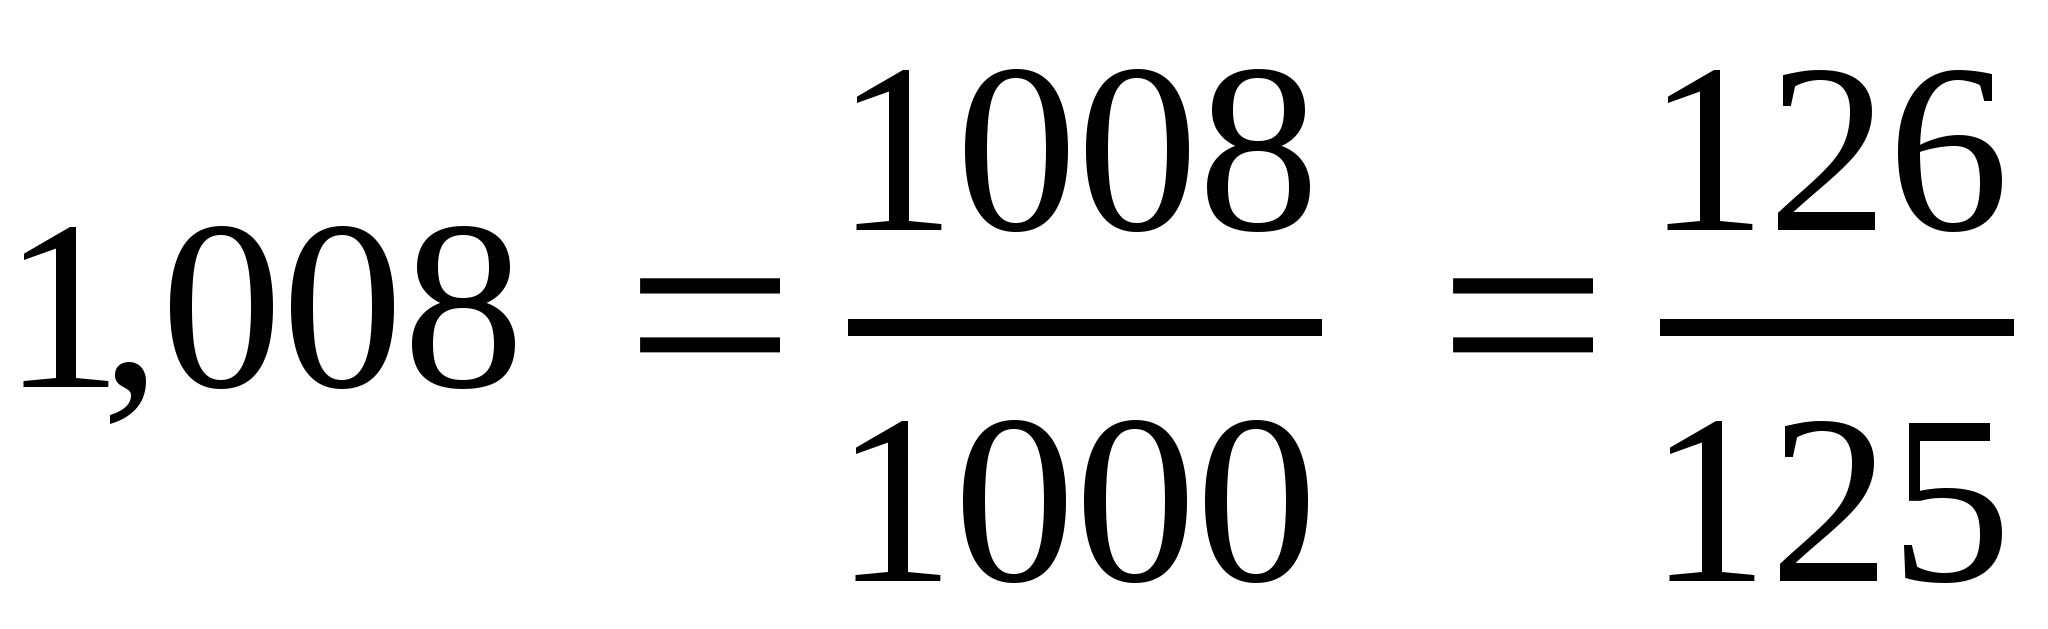 Конспект урока по математике на тему Разложение положительной обыкновенной дроби в конечную десятичную дробь (6 класс)